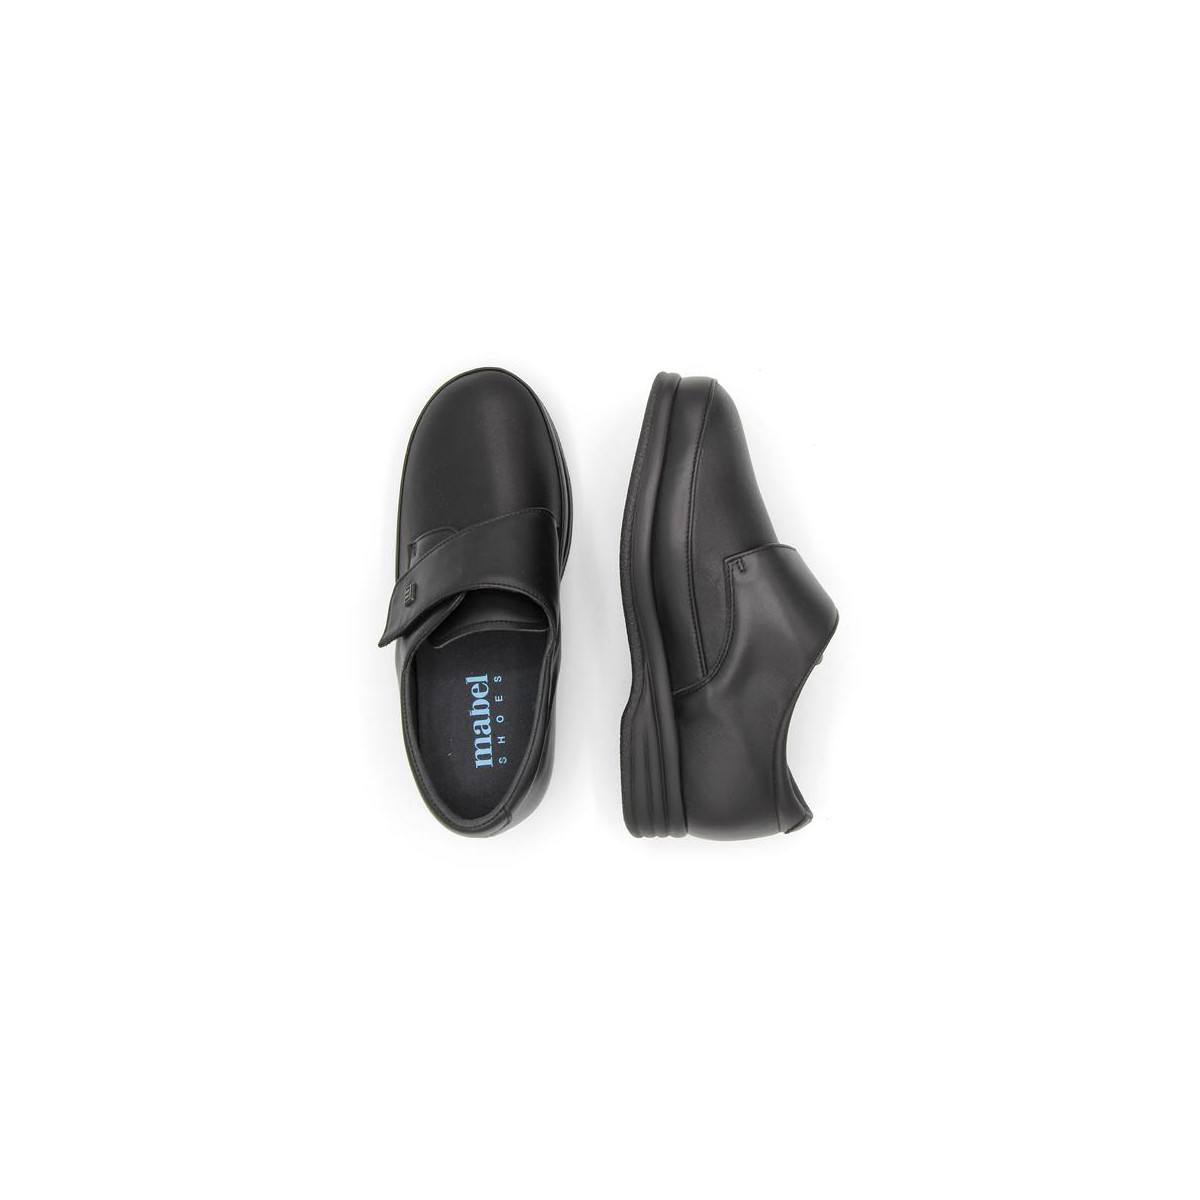 Chaussures pieds larges en cuir à velcro - Noir - Mabel Shoes